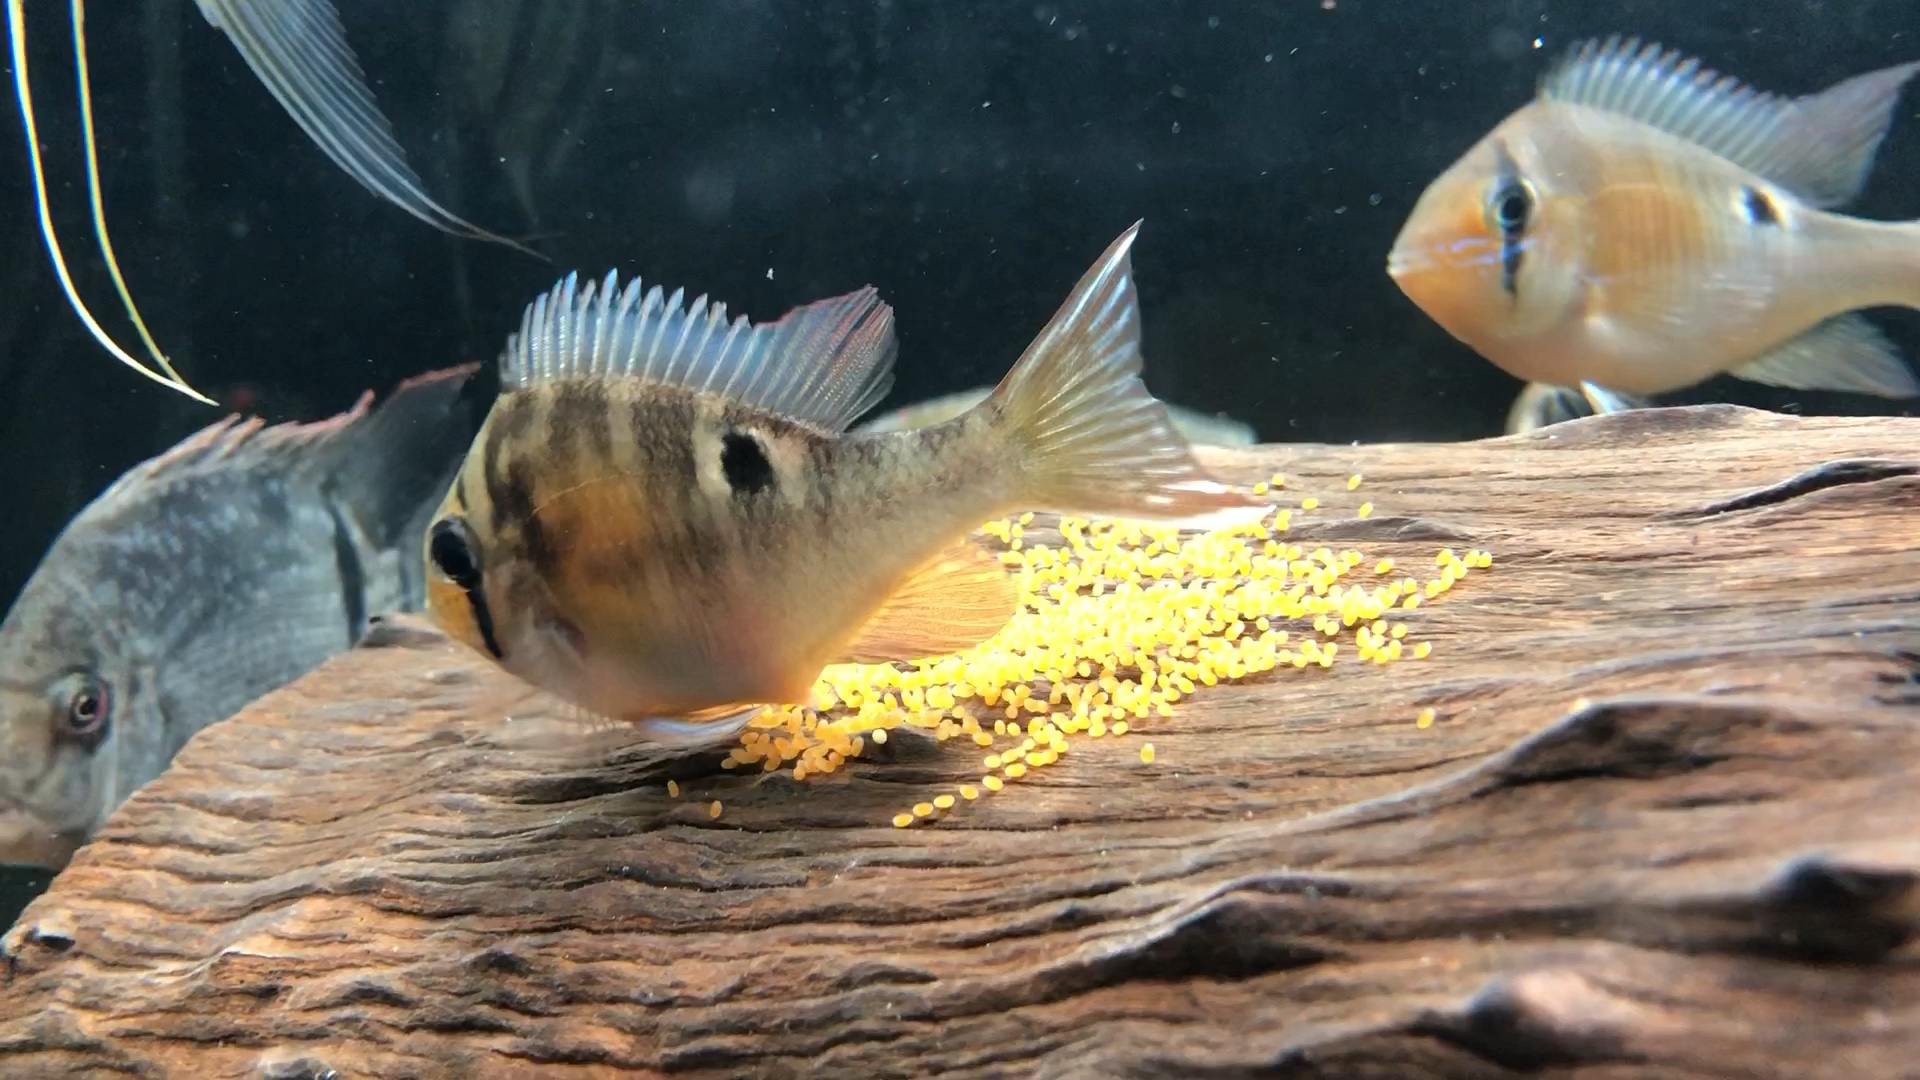 自家圣塔伦月亮宝石鱼产卵繁殖过程 纪录下